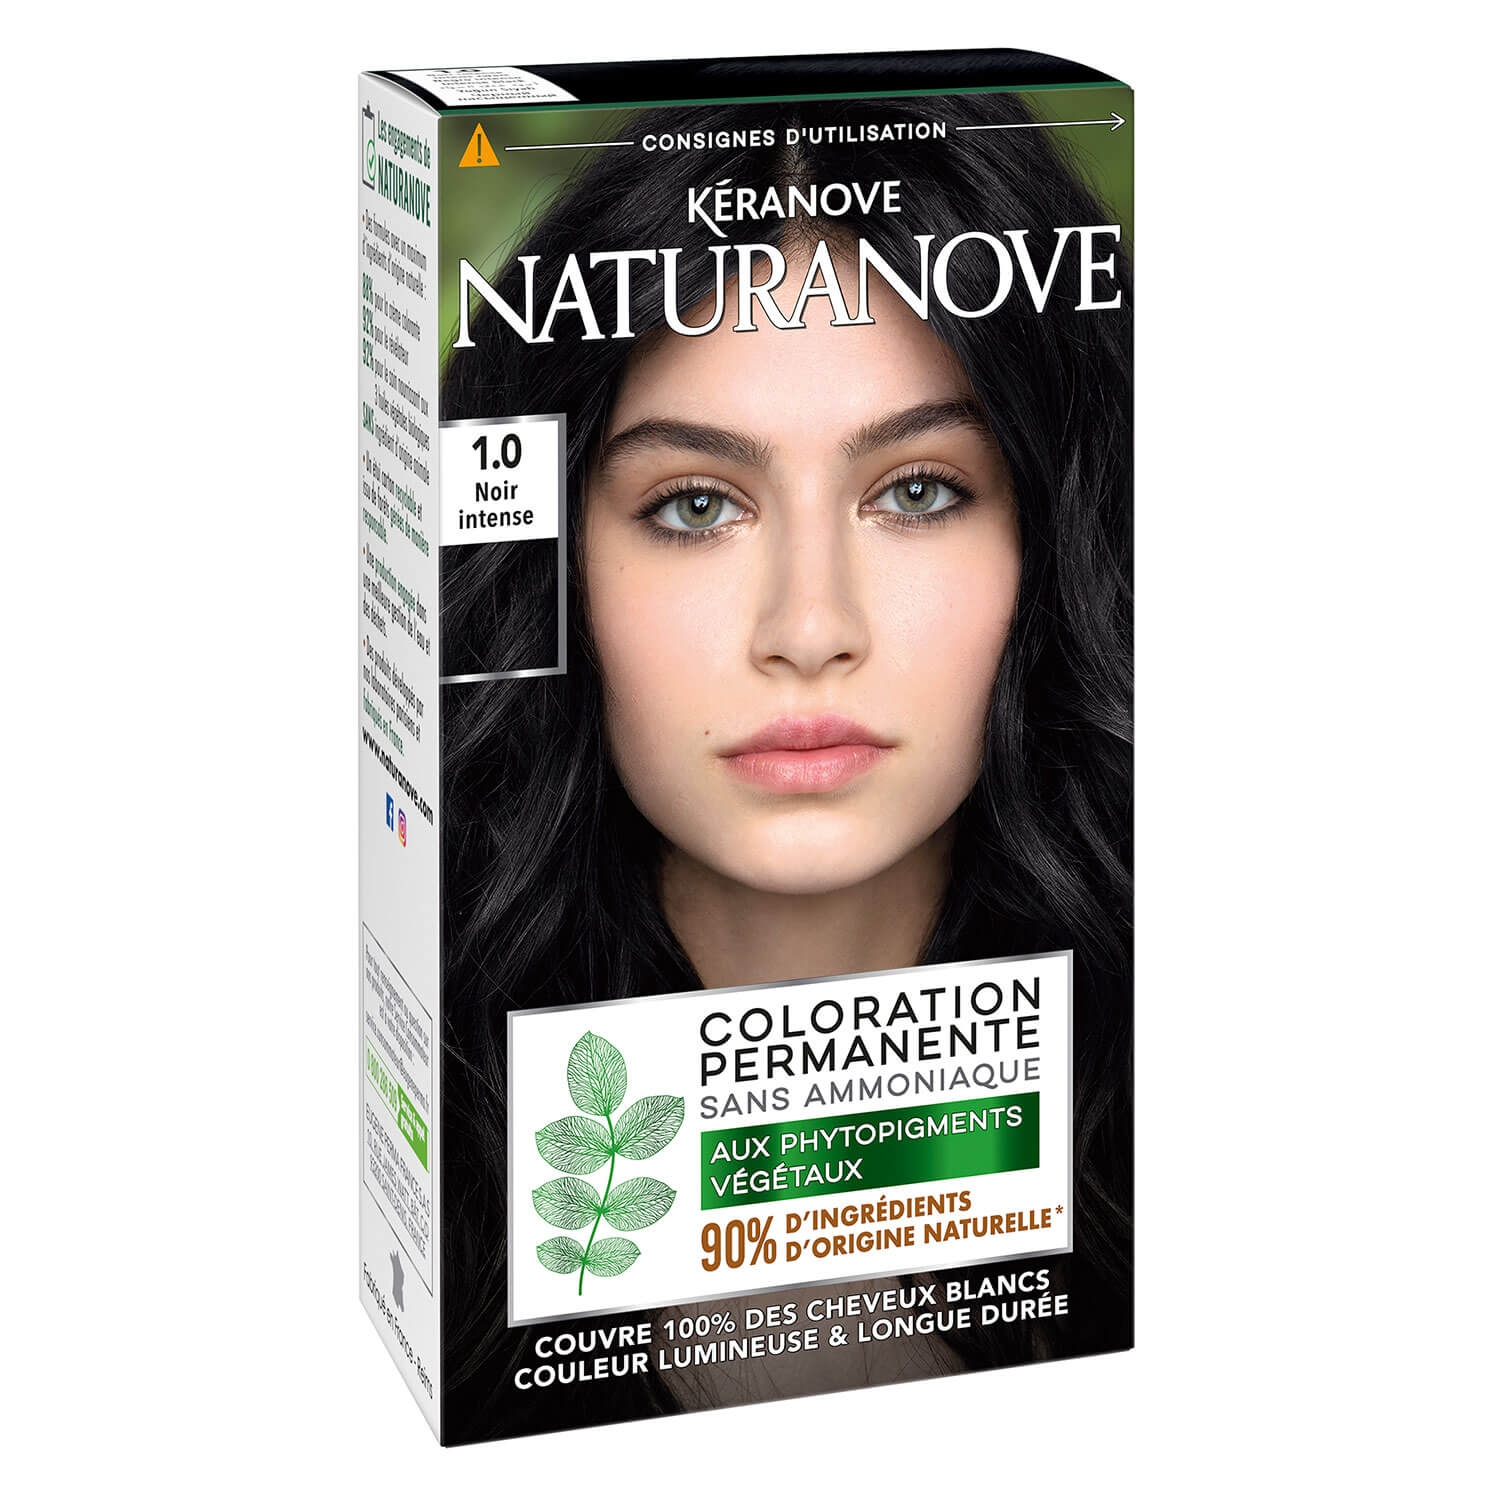 Produktbild von Naturanove - Dauerhafte Haarfarbe Schwarz 1.0